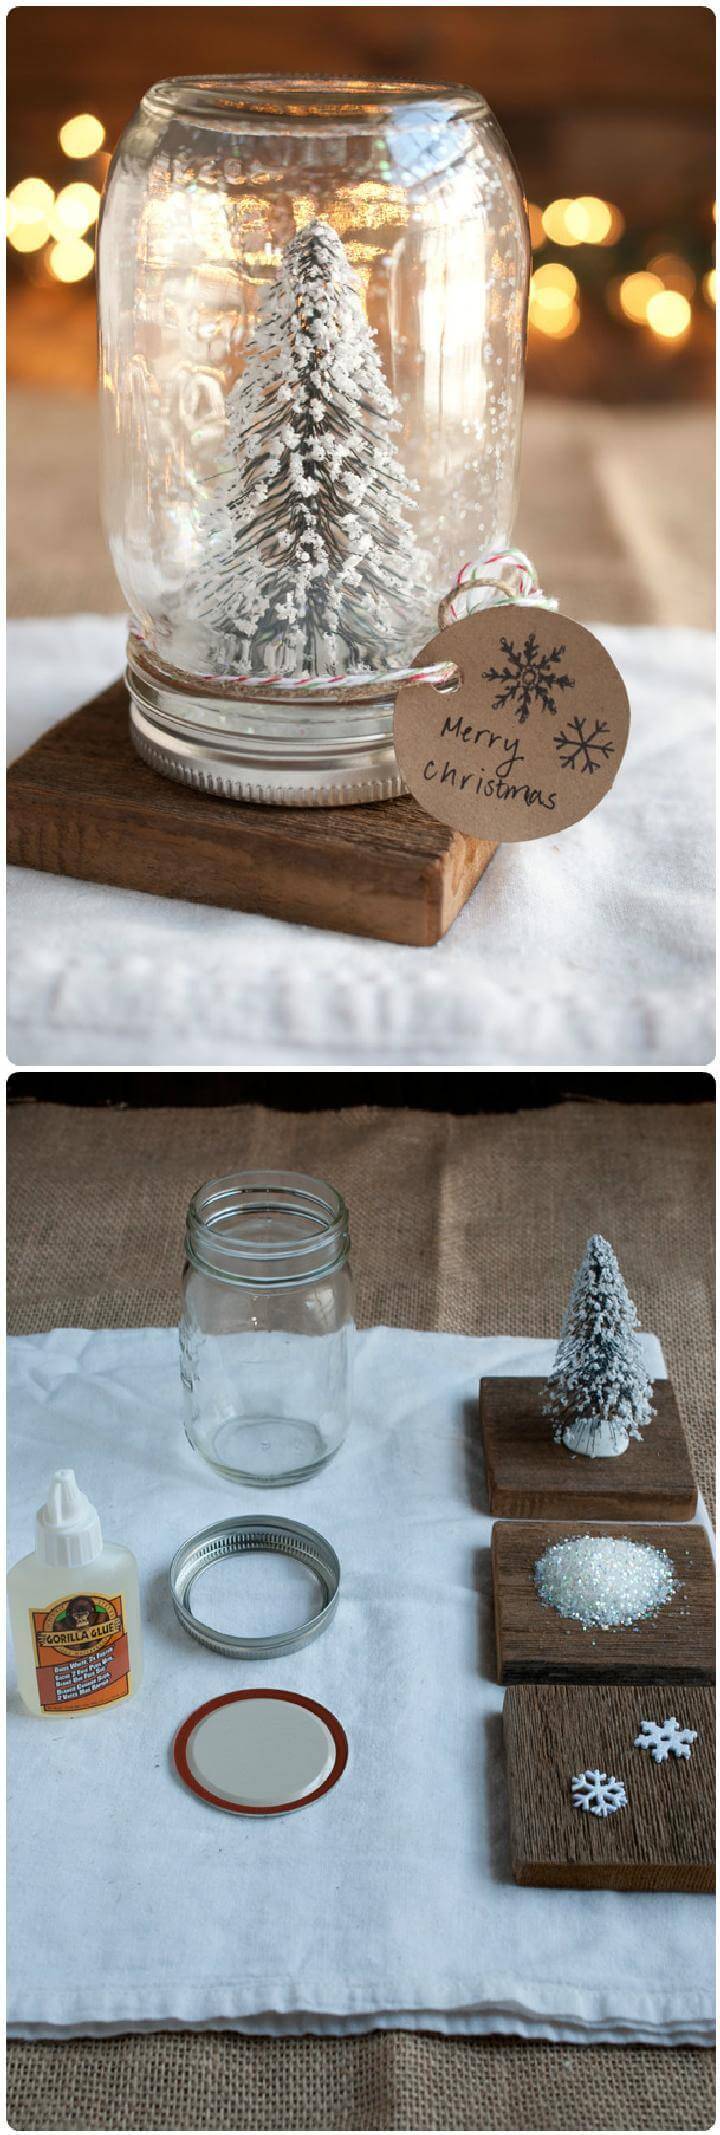 DIY Mason jar Snow Globe